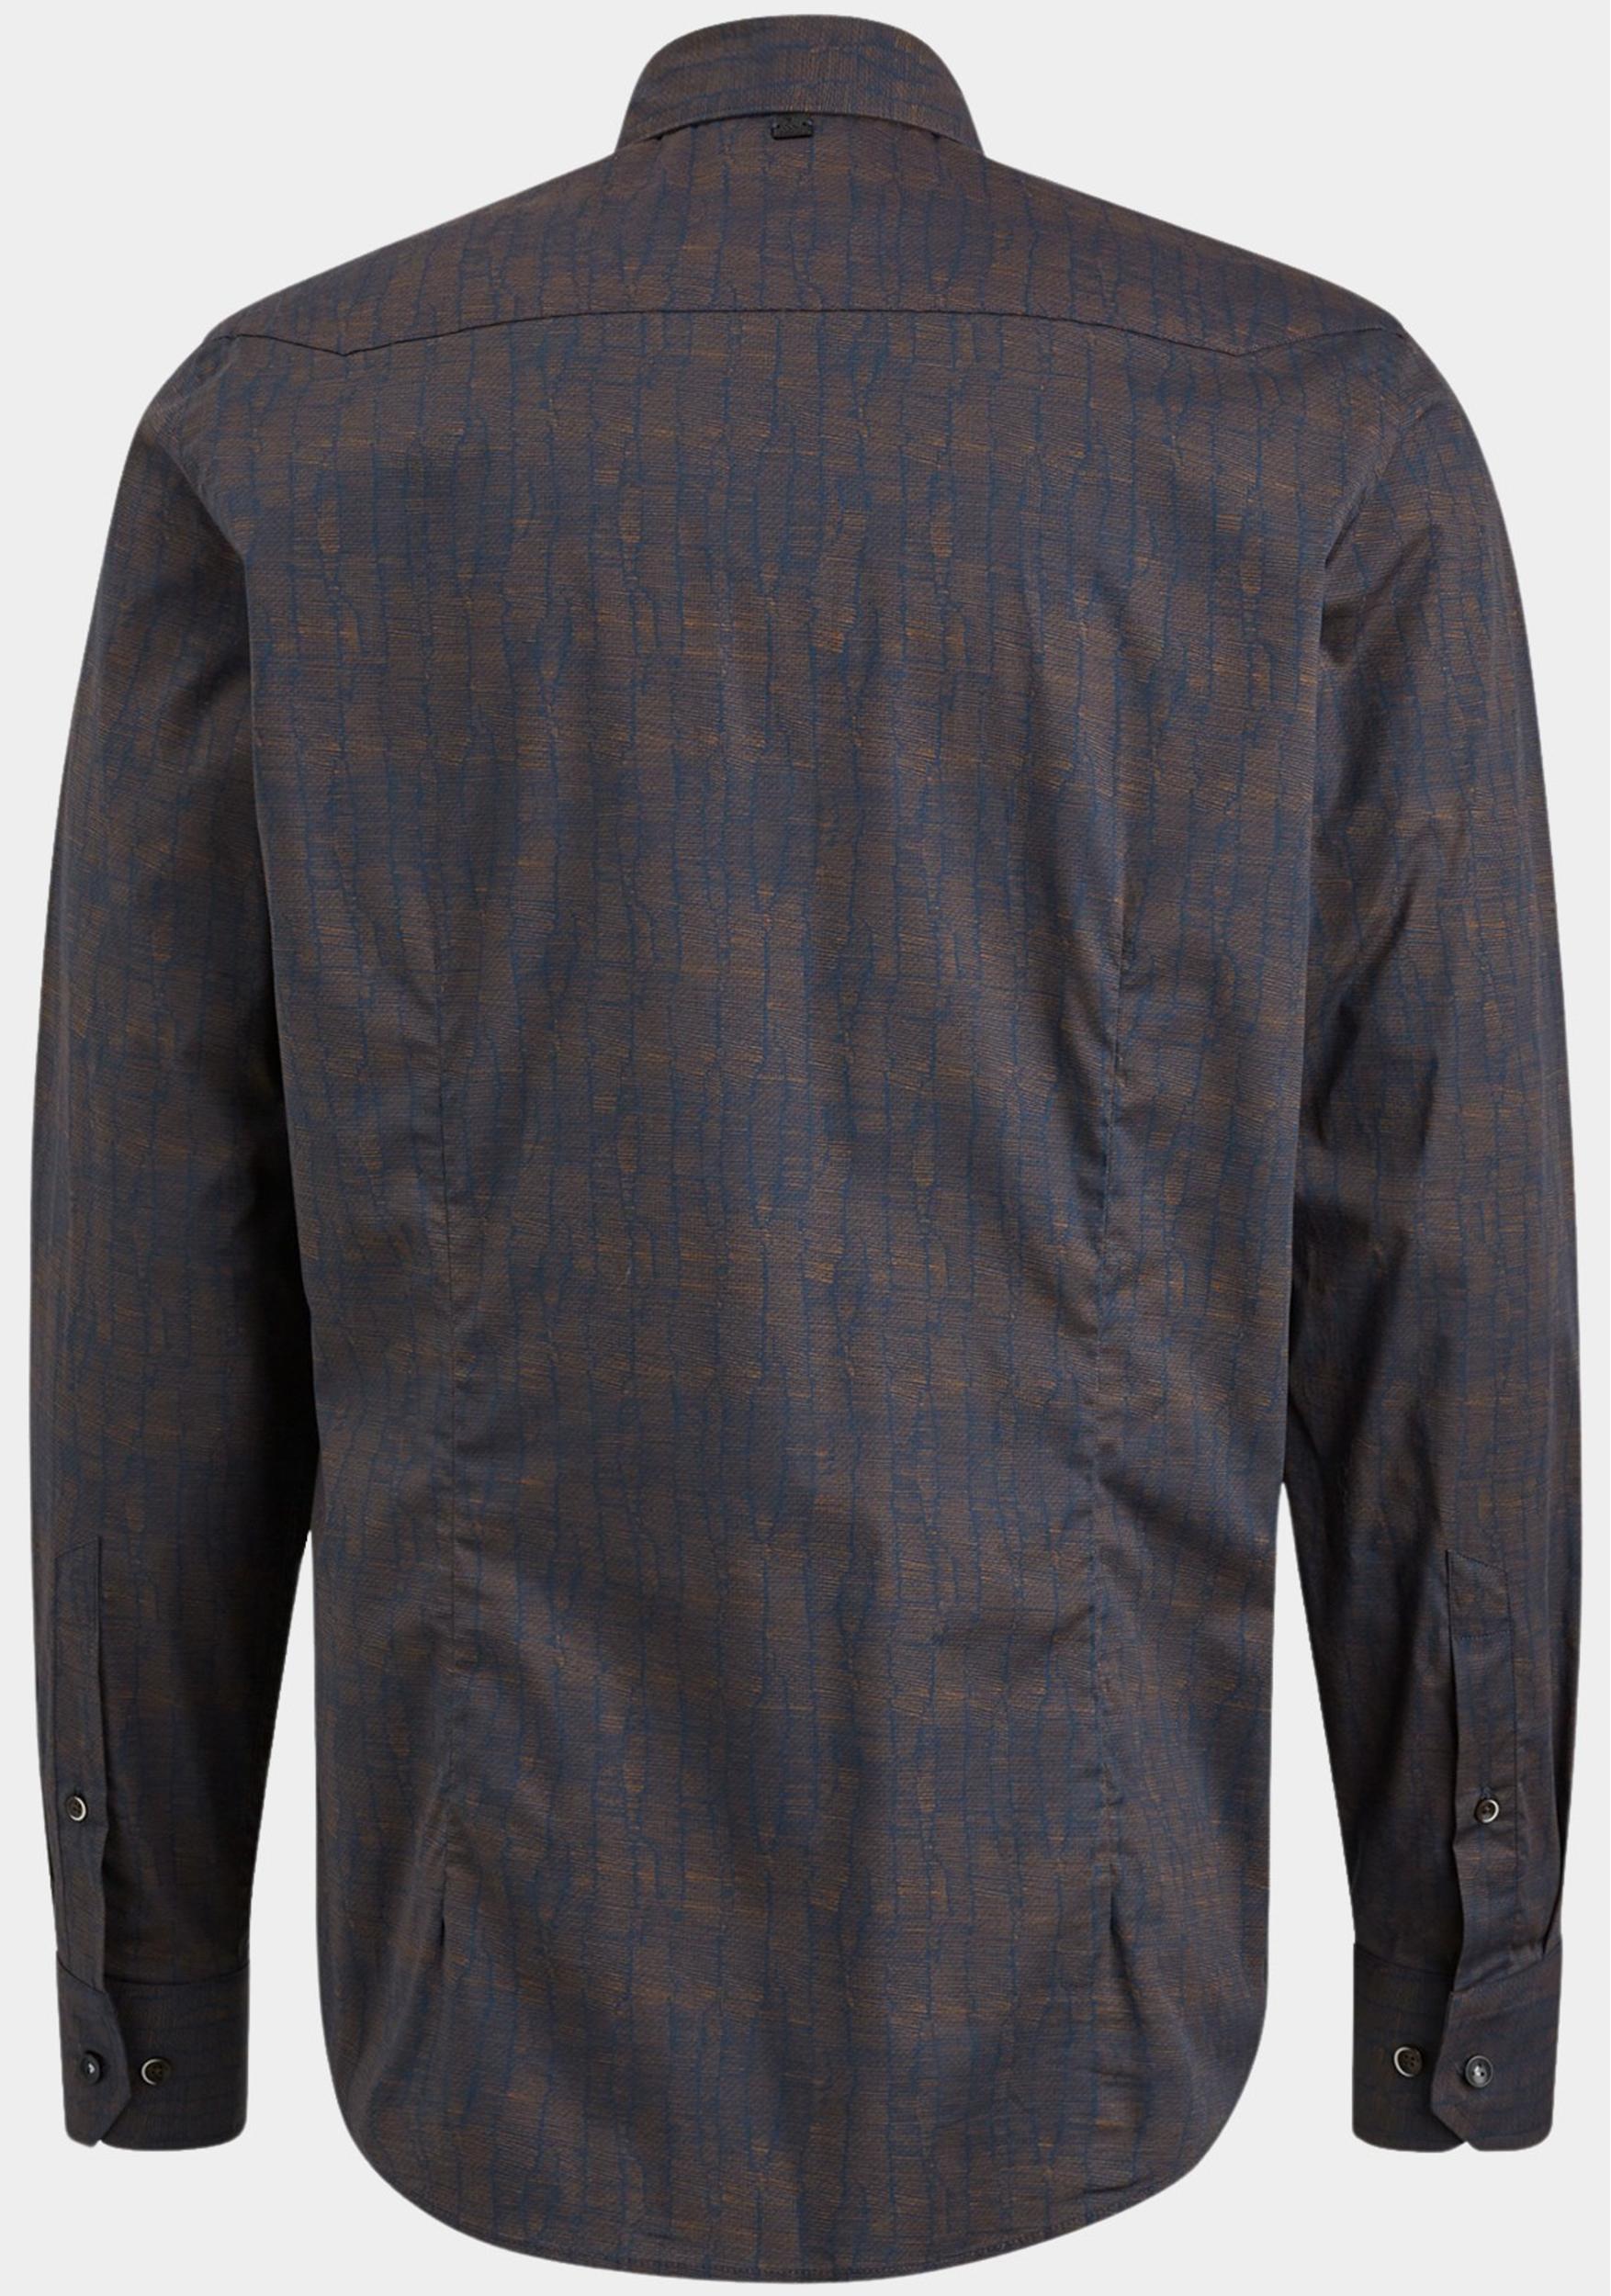 Vanguard Casual hemd lange mouw Bruin Long Sleeve Shirt Print on fi VSI2309220/8250